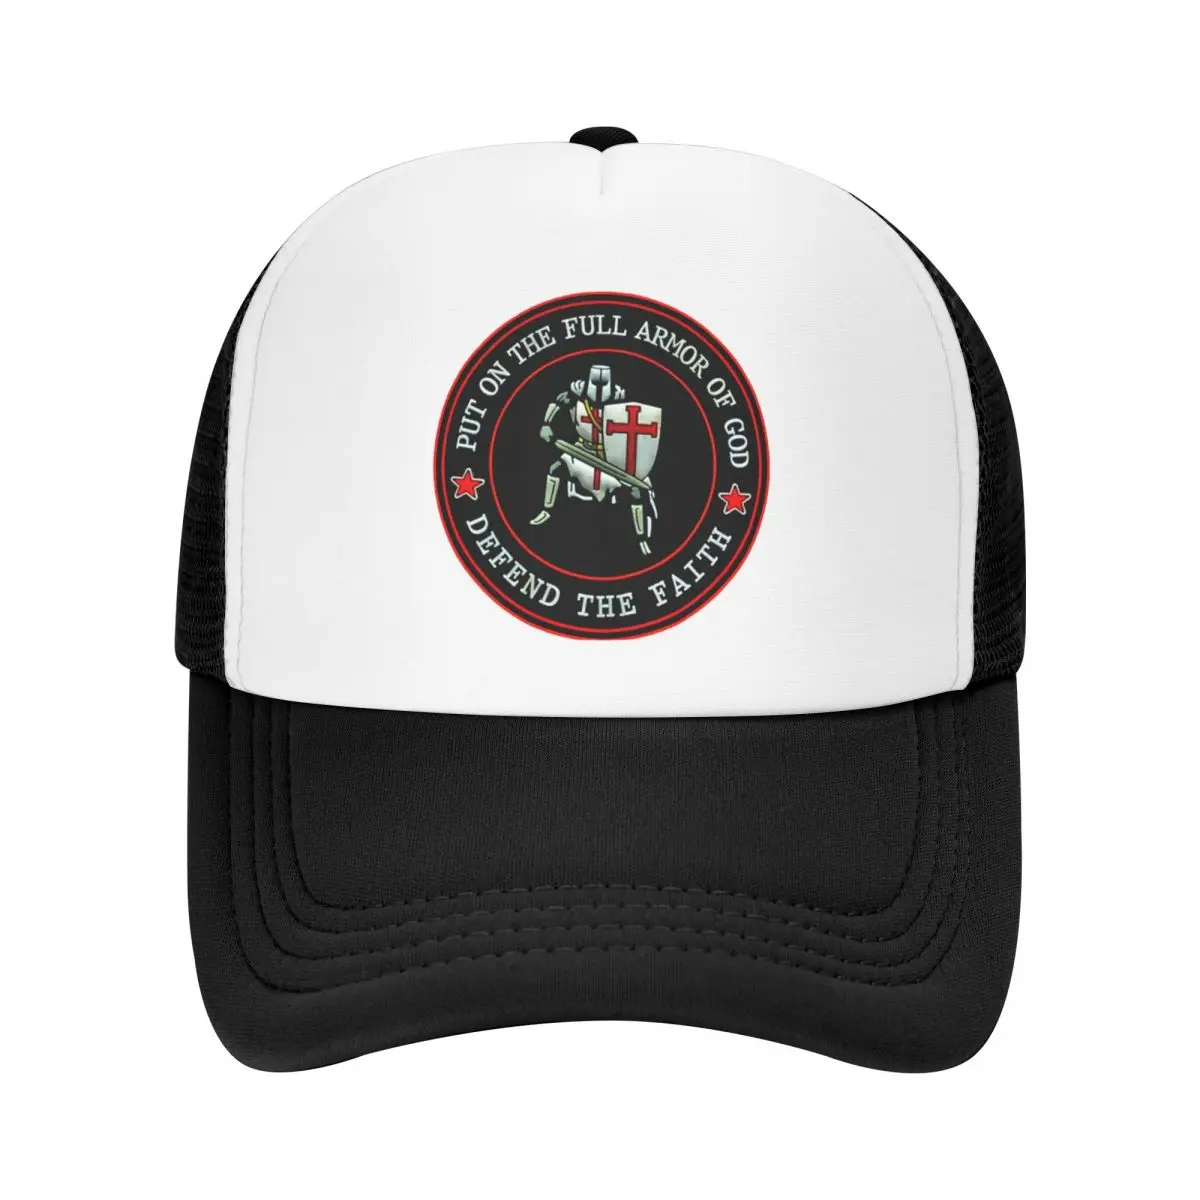 

Christian Knights Templar Crusader Cross Trucker Hat for Men Women Custom Adjustable Adult Baseball Cap Summer Snapback Caps